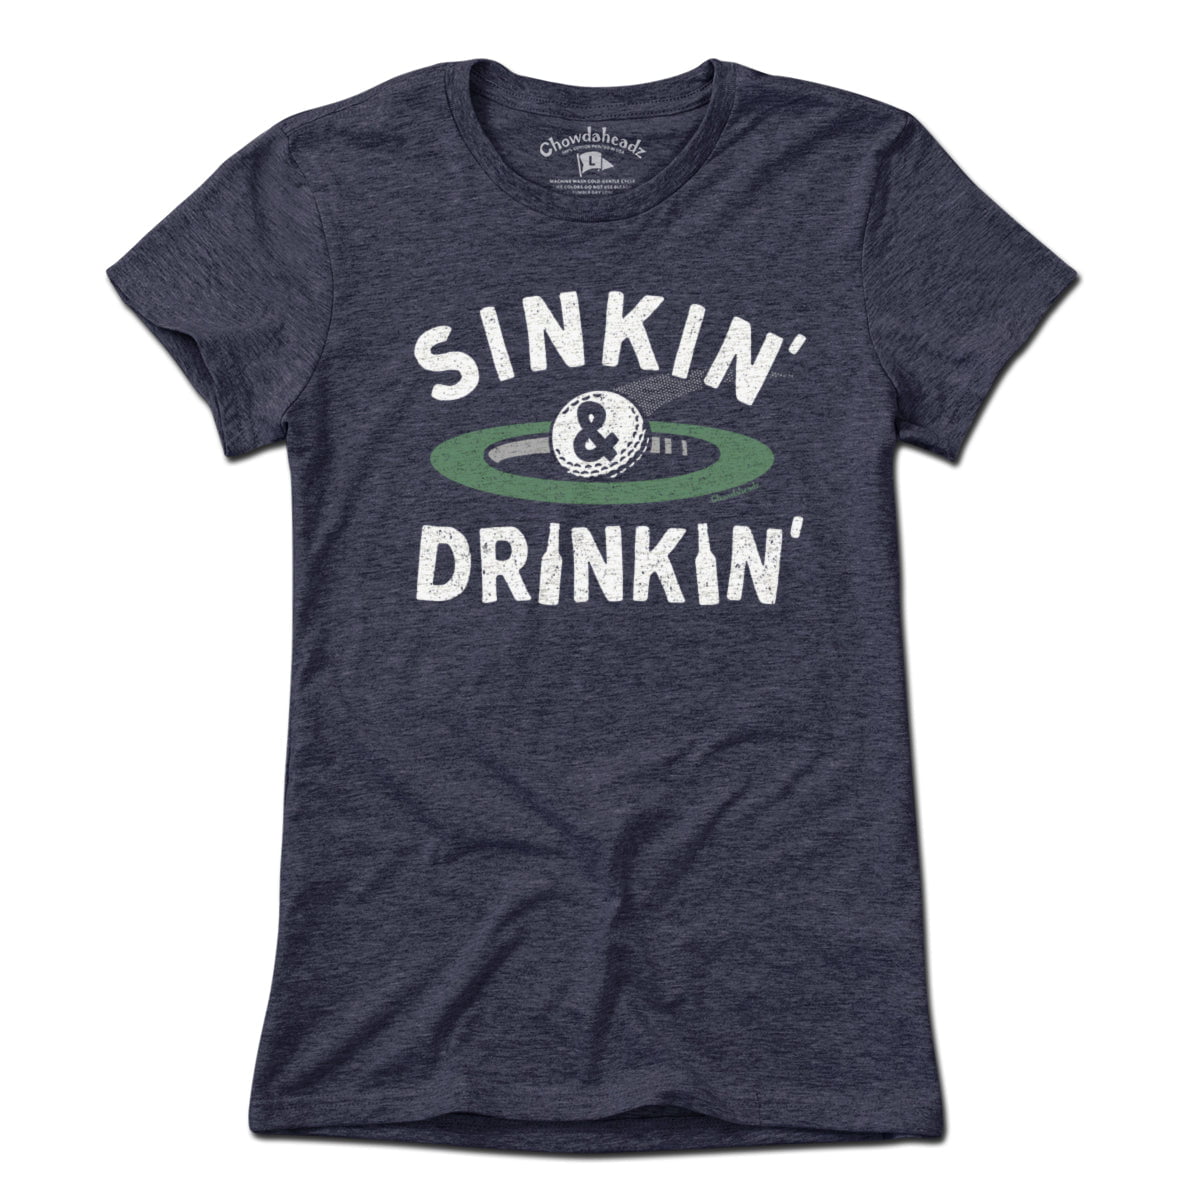 Sinkin' & Drinkin' Golf T-Shirt - Chowdaheadz